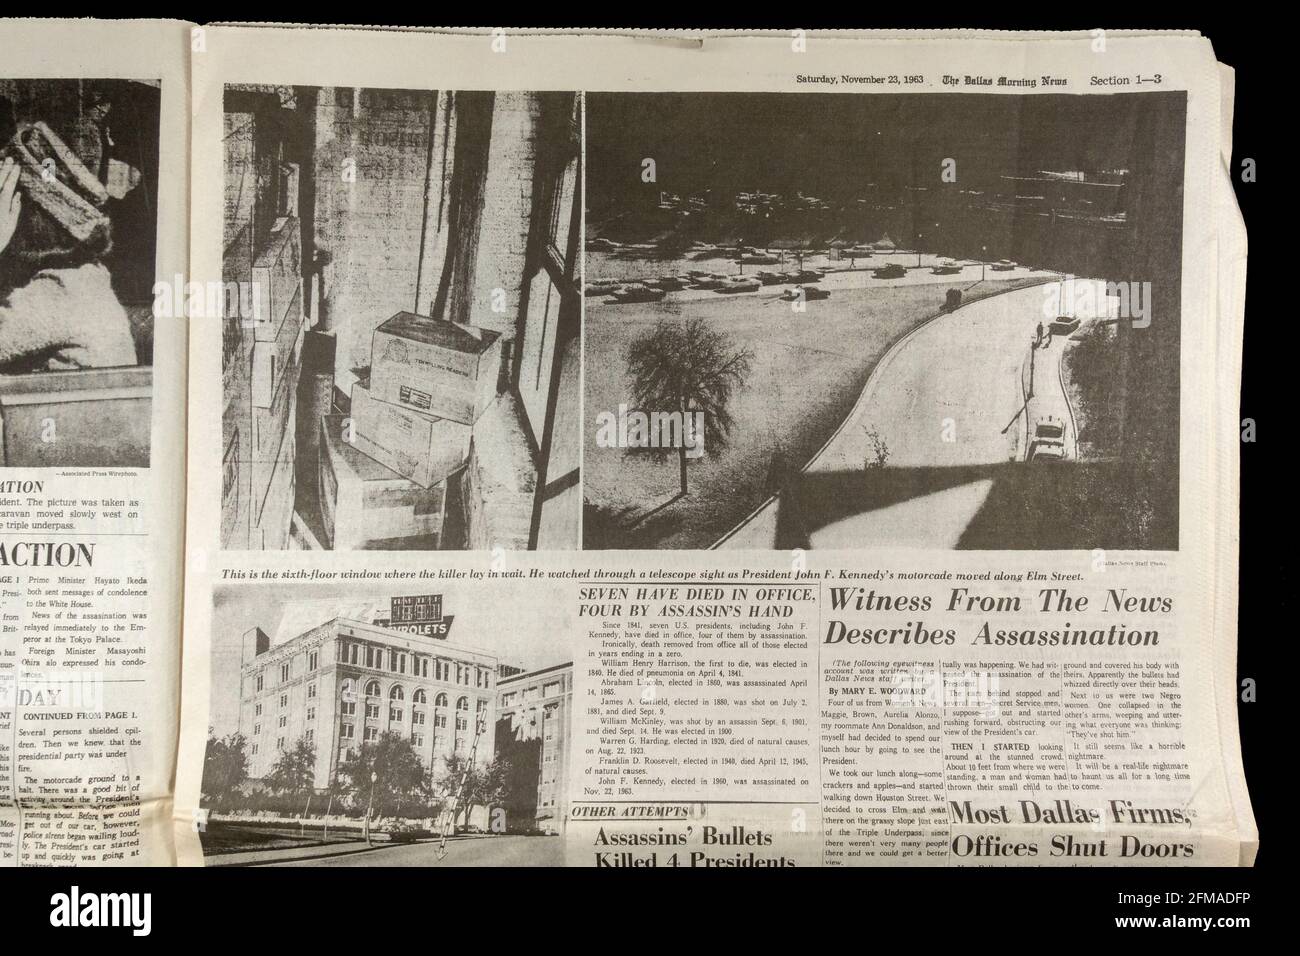 Foto di Elm Street e Dealey Plaza, Dallas Morning News (copia replica), 23 novembre 1963 a seguito dell'assassinio di John F Kennedy. Foto Stock